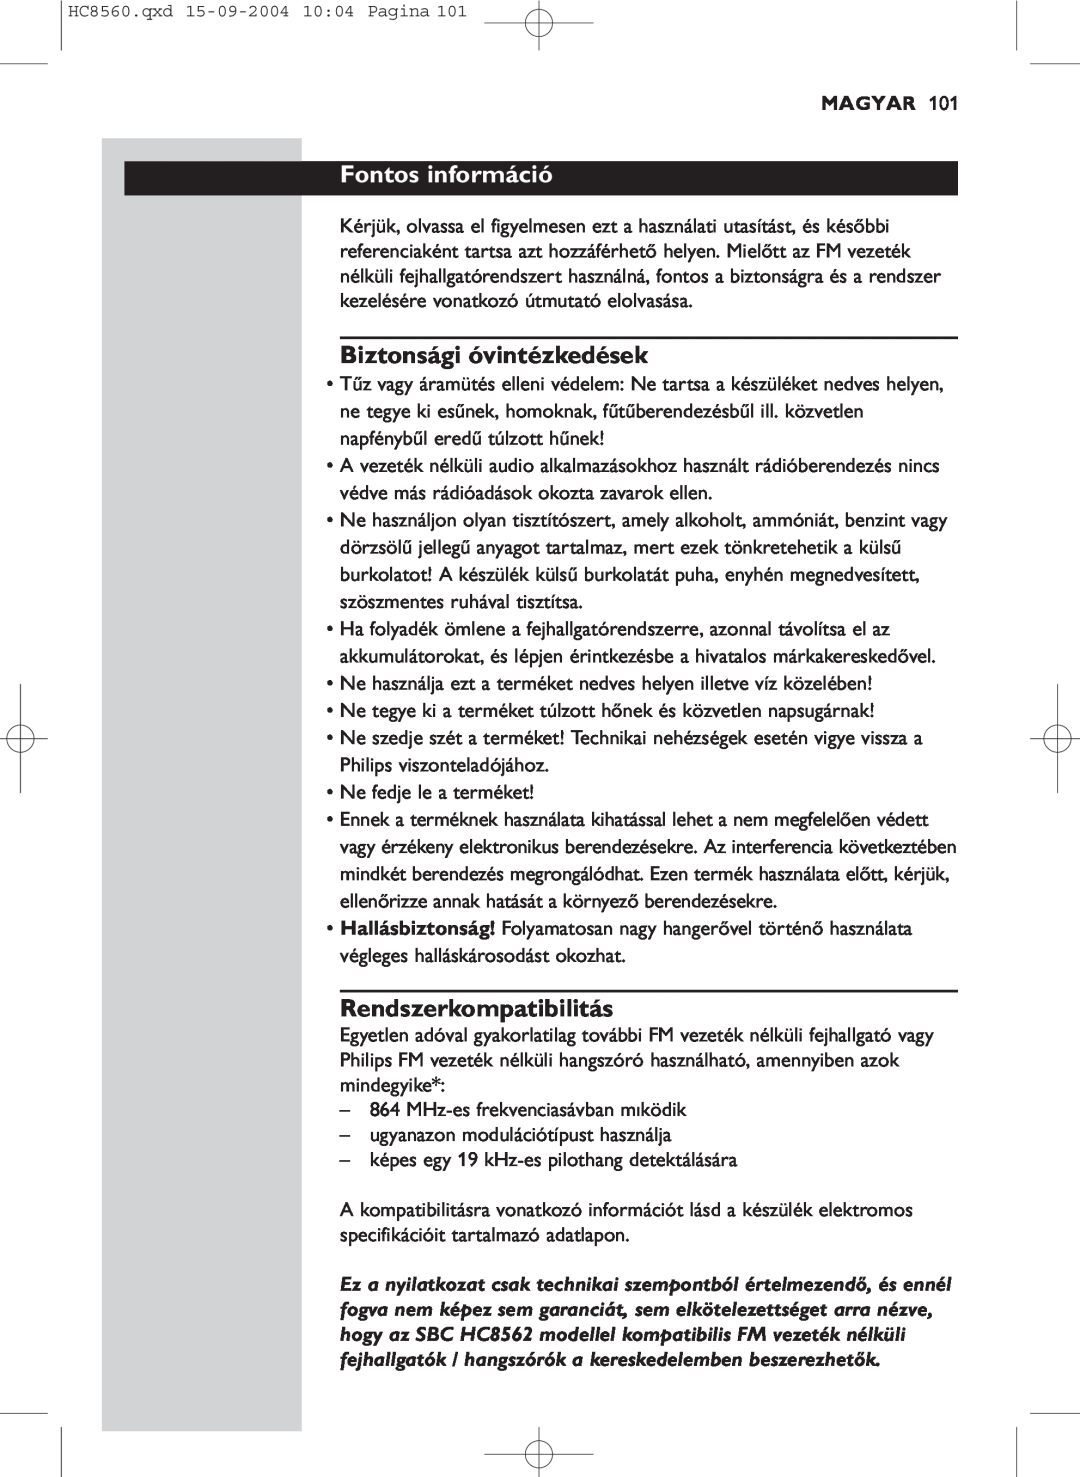 Philips HC 8560 manual Fontos információ, Biztonsági óvintézkedések, Rendszerkompatibilitás, Magyar 